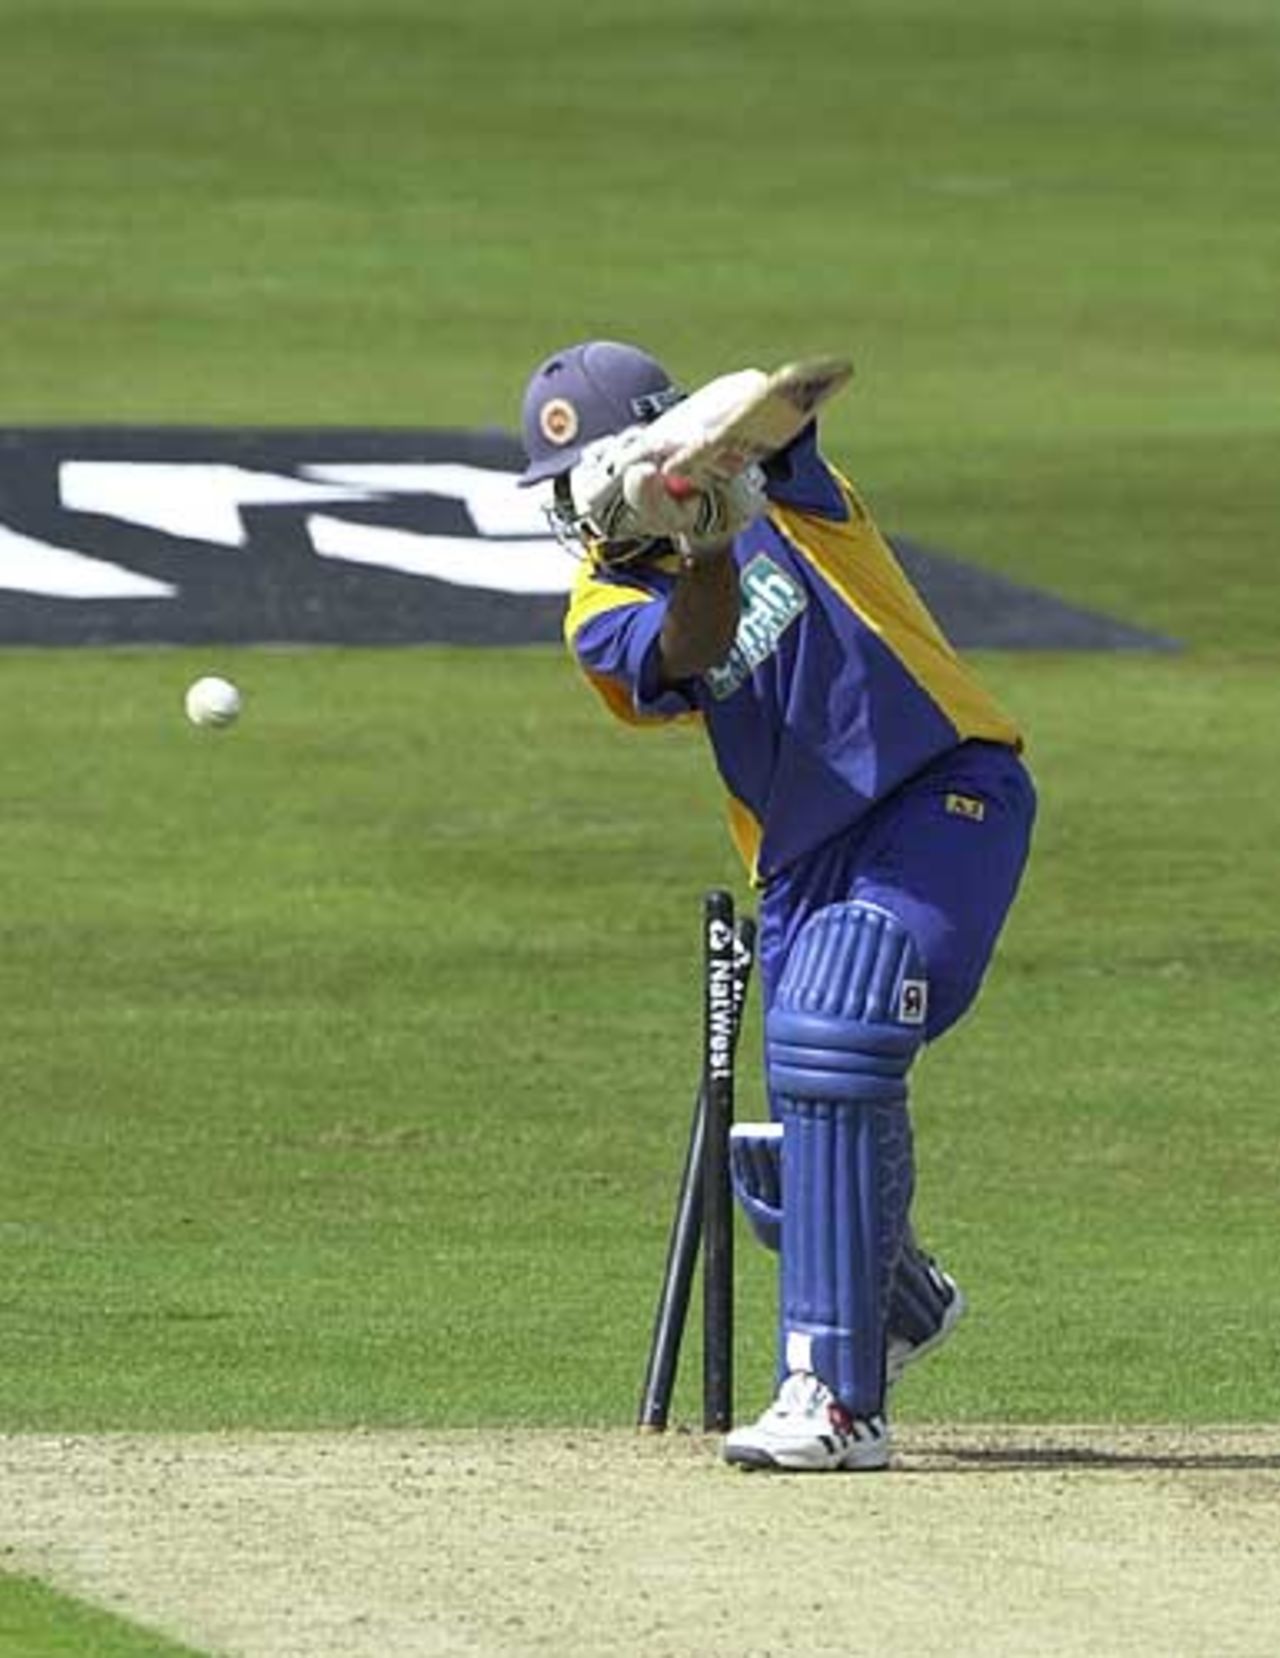 Jayawardene is clean bowled by Flintoff for 4, England v Sri Lanka at Leeds, July 2002